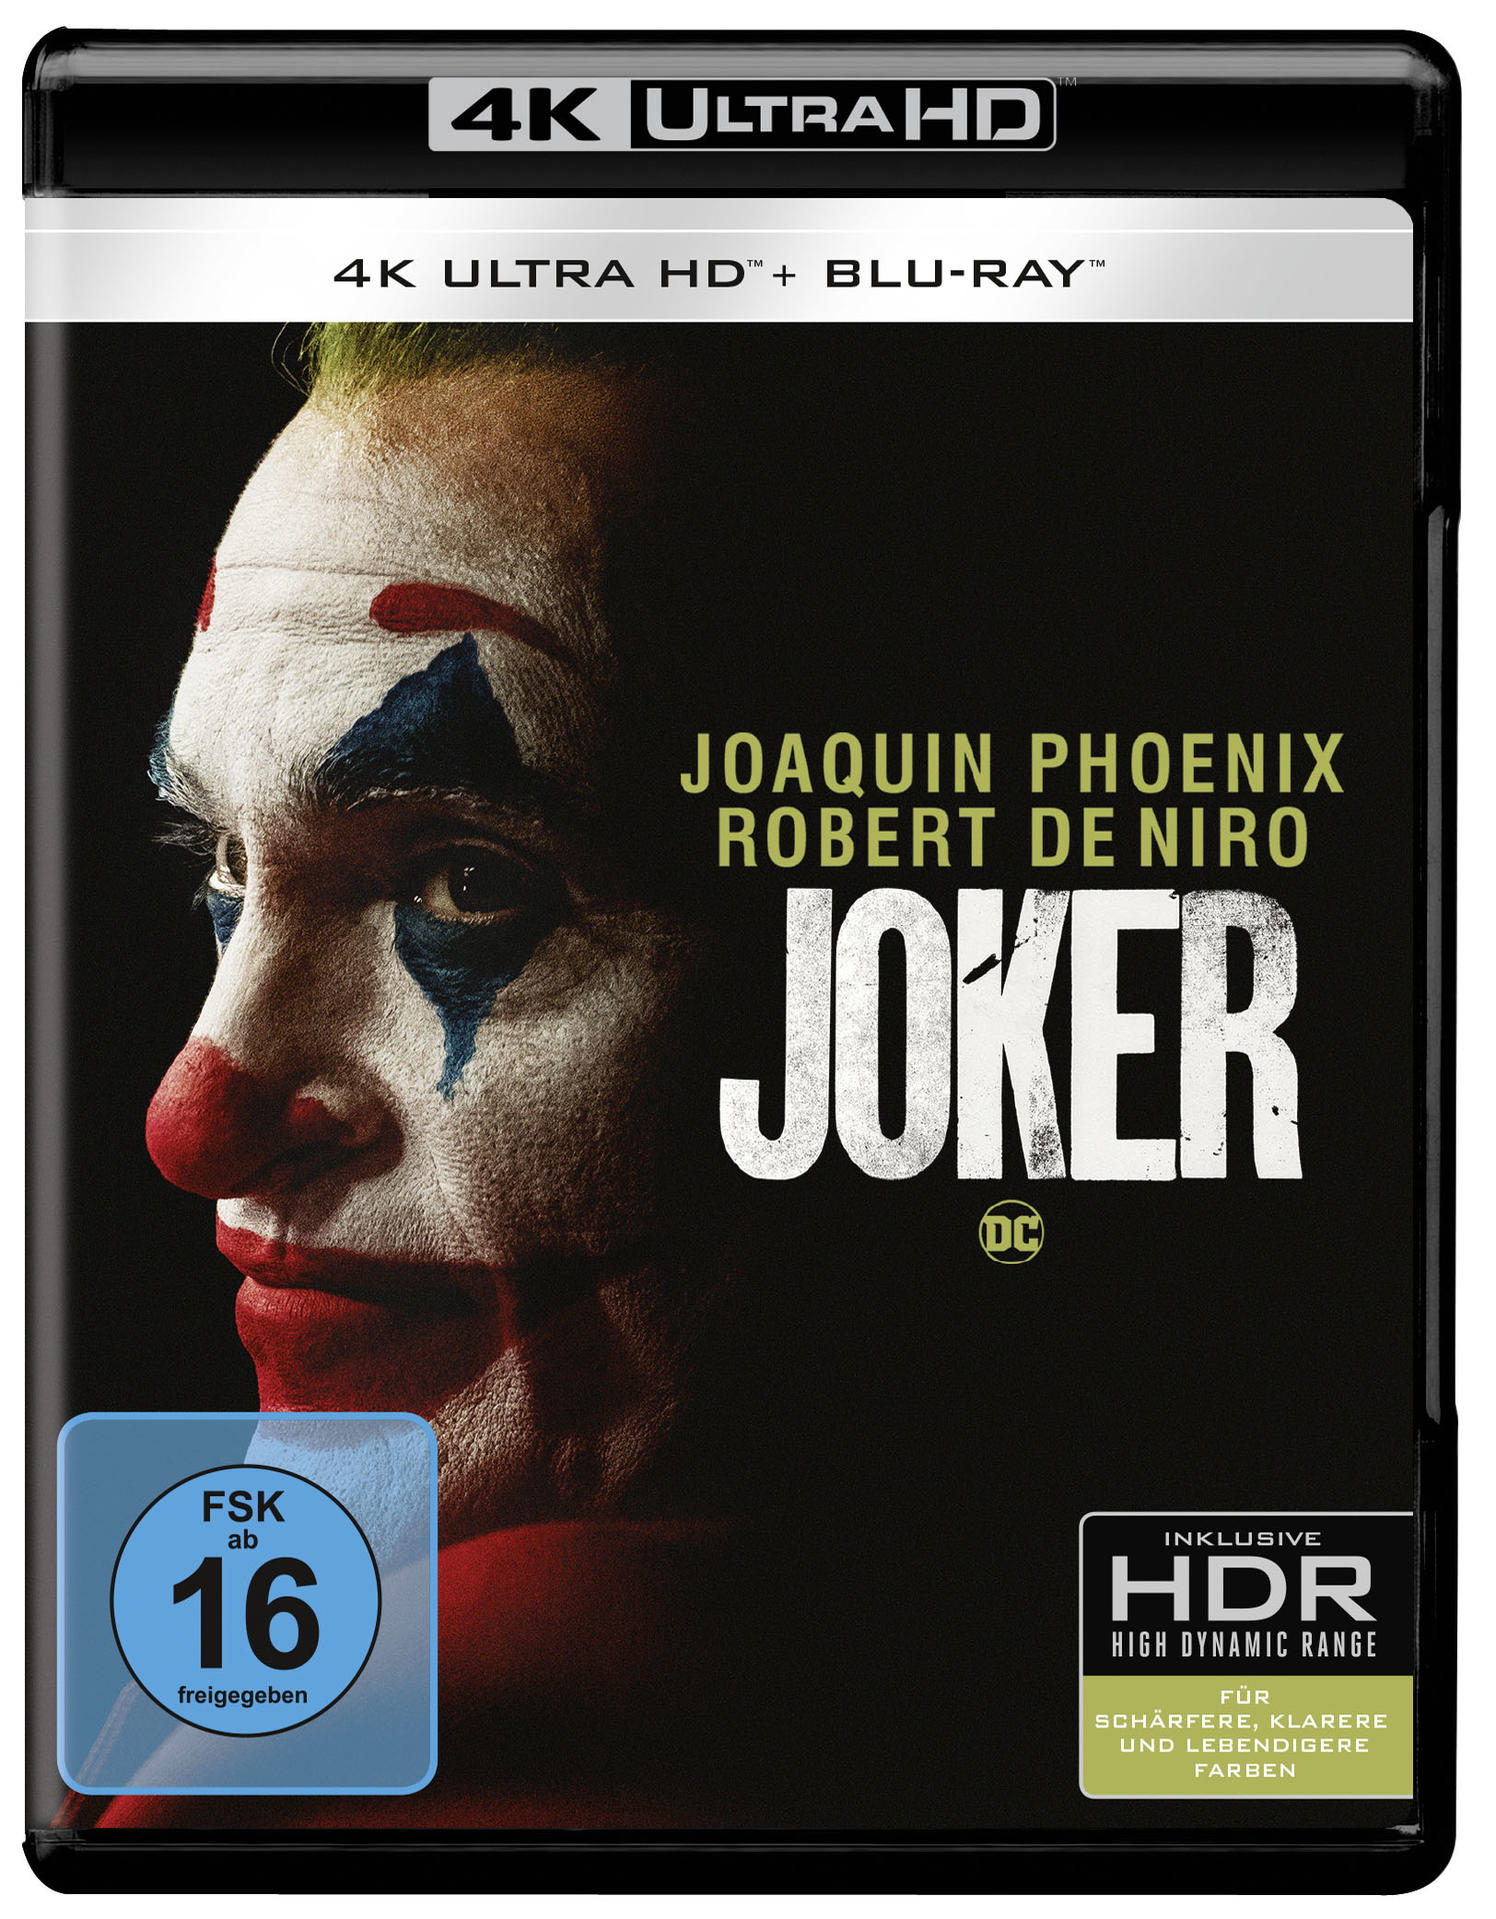 4K Ultra + Blu-ray HD Blu-ray Joker